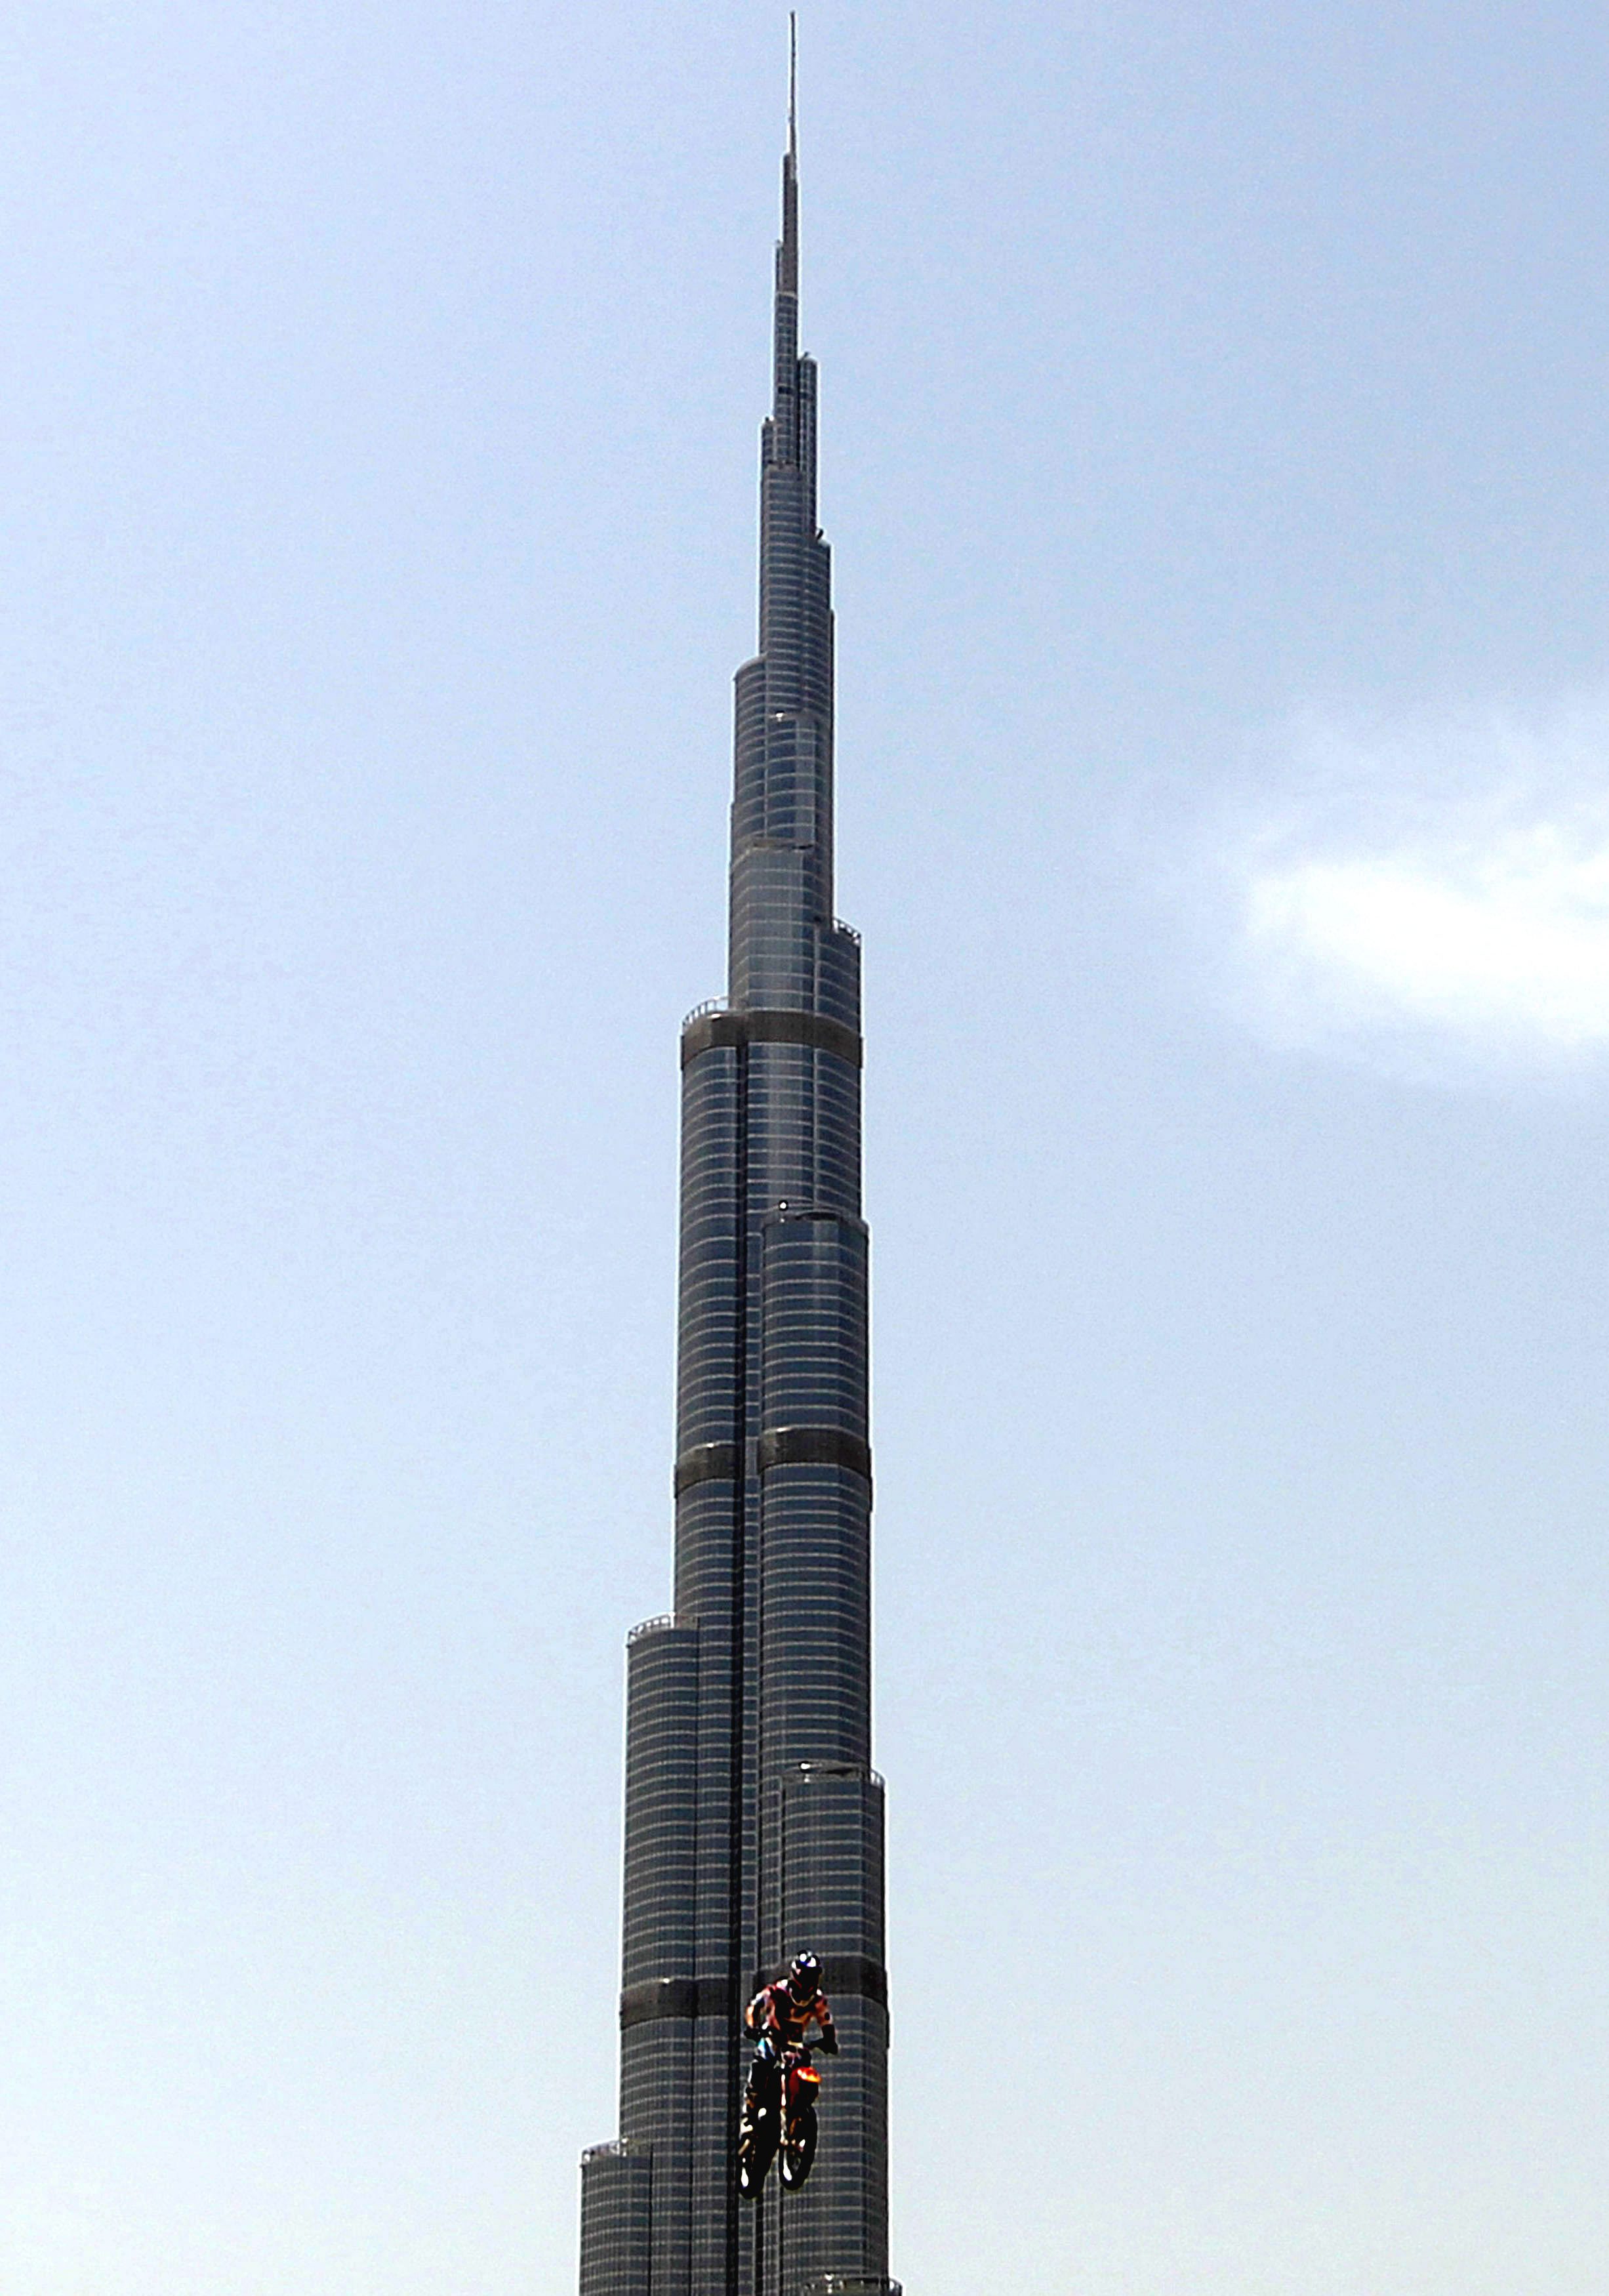 De strijd om de hoogste wolkenkrabber ter wereld heeft een hoog ijdelheidsgehalte. Dat blijkt als je kijkt naar de bewoonbare hoogte van wolkenkrabbers. Vooral in het Midden-Oosten, Azië en de Verenigde Staten kunnen ze er wat van. Megahoge wolkenkrabbers, zoals de Burj Khalifa die officieel een hoogte van 828 meter kent, sieren de skyline. Maar de strijd om 'de hoogste' is in veel gevallen in schimmengevecht, zo betoogt de Council on Tall Buildings and Urban Habitat (CTBUH), een van oorsprong Amerikaanse adviesgroep die zich richt op hoogbouw.